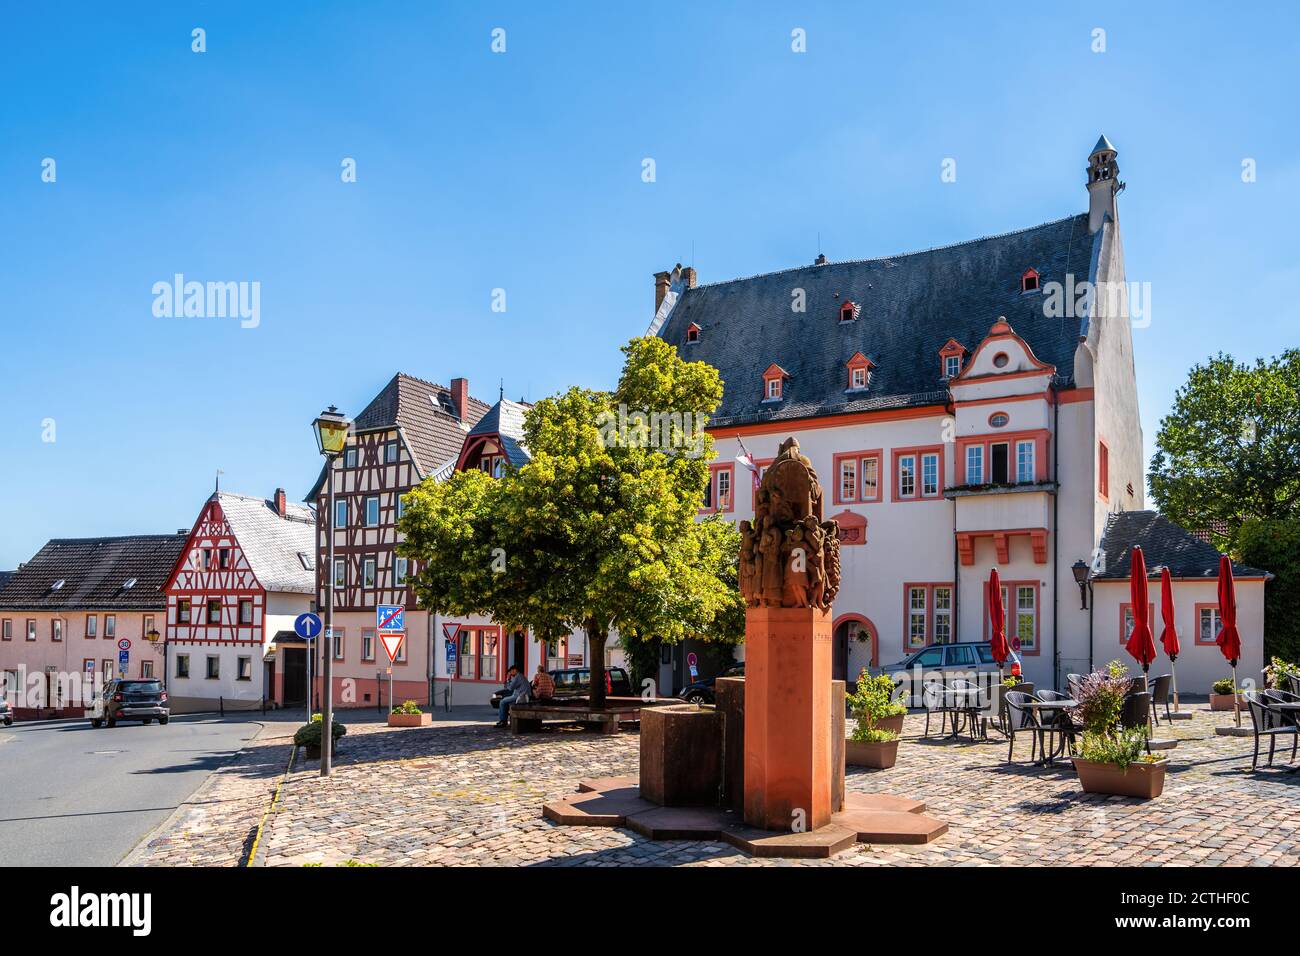 Historischer Markt von Kiedrich, Rheingau, Deutschland Stockfoto